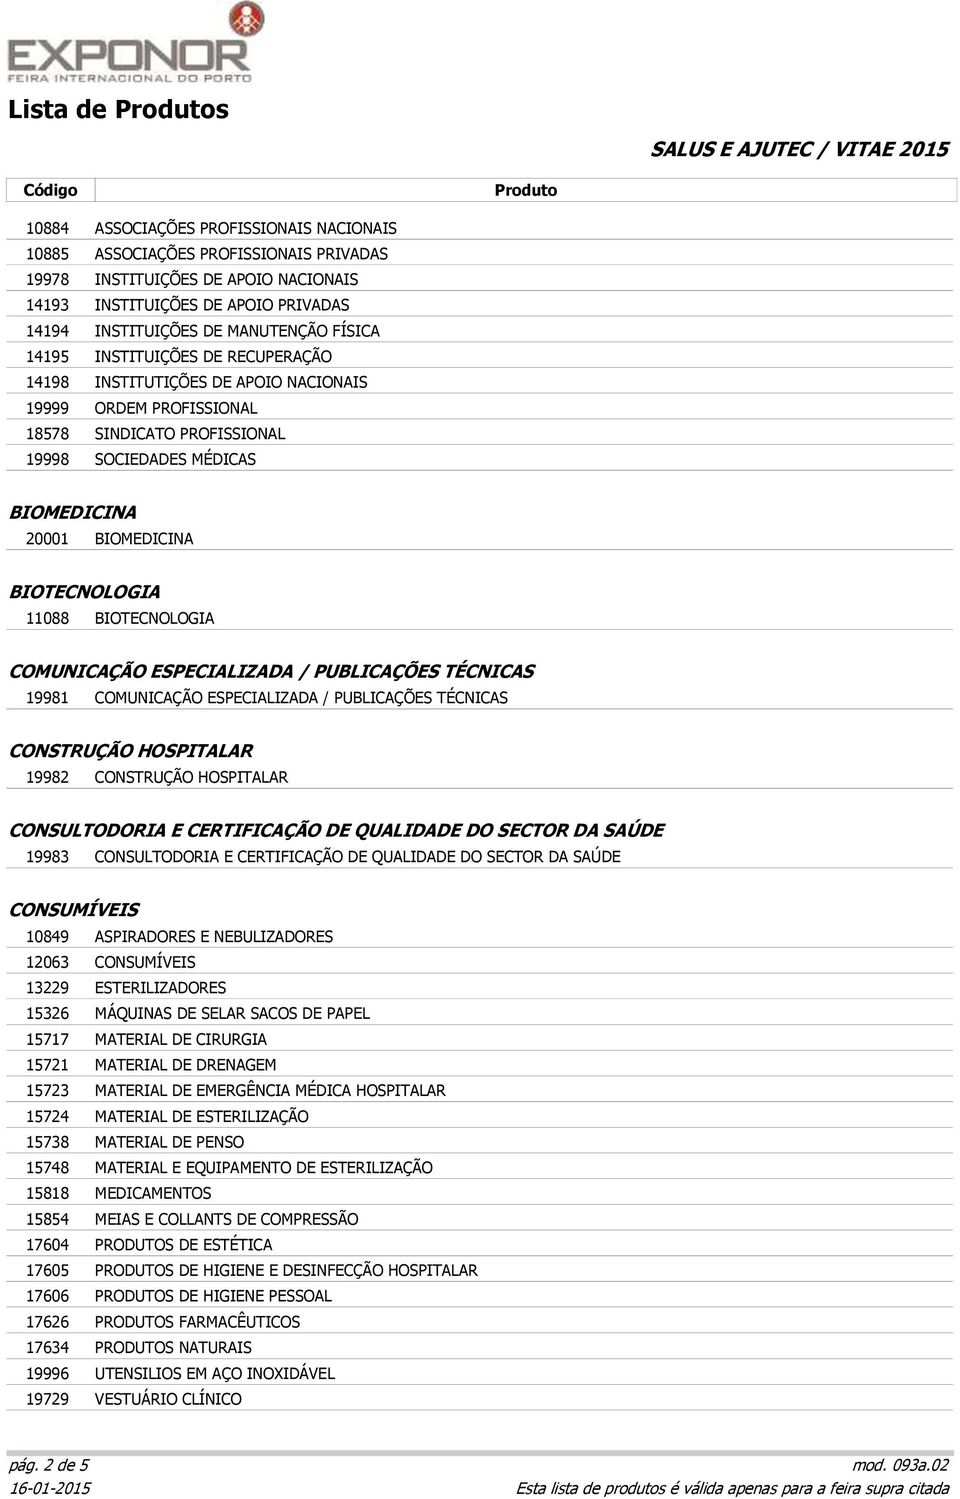 11088 BIOTECNOLOGIA COMUNICAÇÃO ESPECIALIZADA / PUBLICAÇÕES TÉCNICAS 19981 COMUNICAÇÃO ESPECIALIZADA / PUBLICAÇÕES TÉCNICAS CONSTRUÇÃO HOSPITALAR 19982 CONSTRUÇÃO HOSPITALAR CONSULTODORIA E